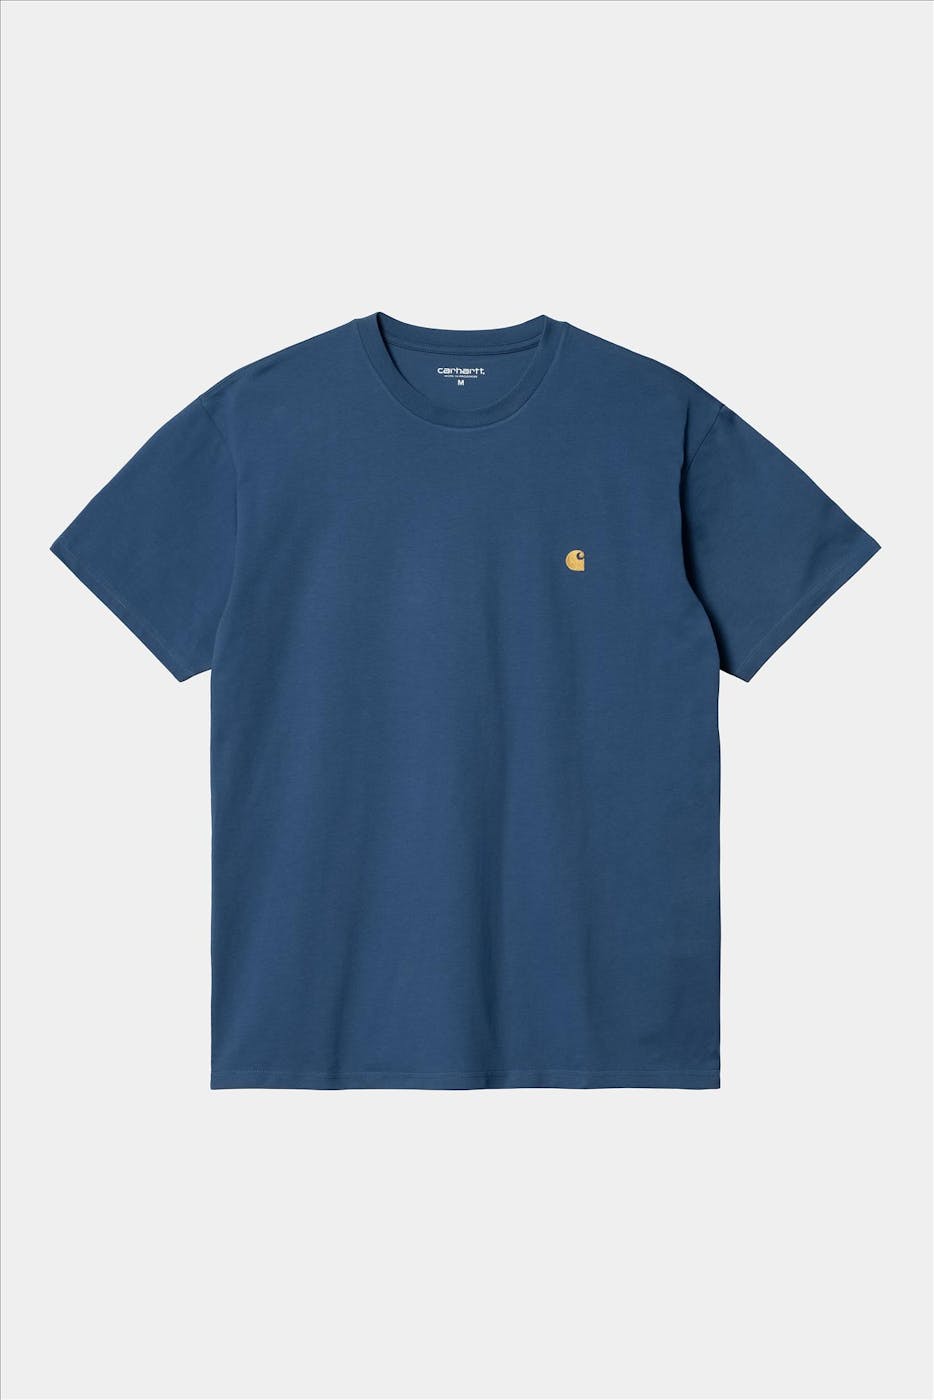 Carhartt WIP - Blauwe Chase T-shirt